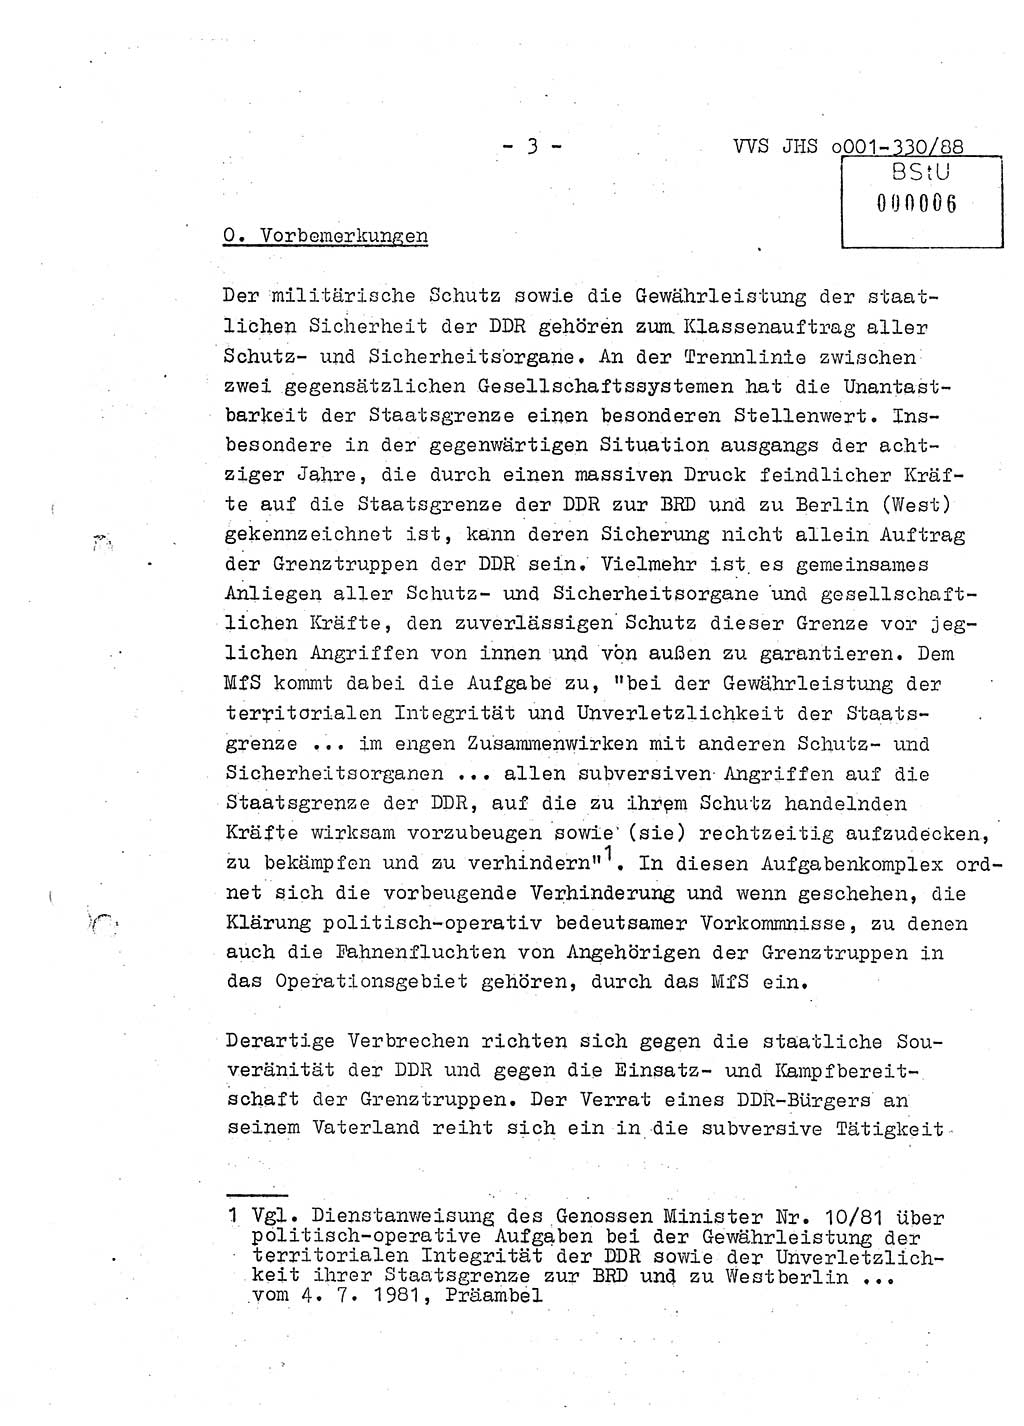 Diplomarbeit Offiziersschüler Thomas Mühle (HA Ⅸ/6), Ministerium für Staatssicherheit (MfS) [Deutsche Demokratische Republik (DDR)], Juristische Hochschule (JHS), Vertrauliche Verschlußsache (VVS) o001-330/88, Potsdam 1988, Seite 3 (Dipl.-Arb. MfS DDR JHS VVS o001-330/88 1988, S. 3)